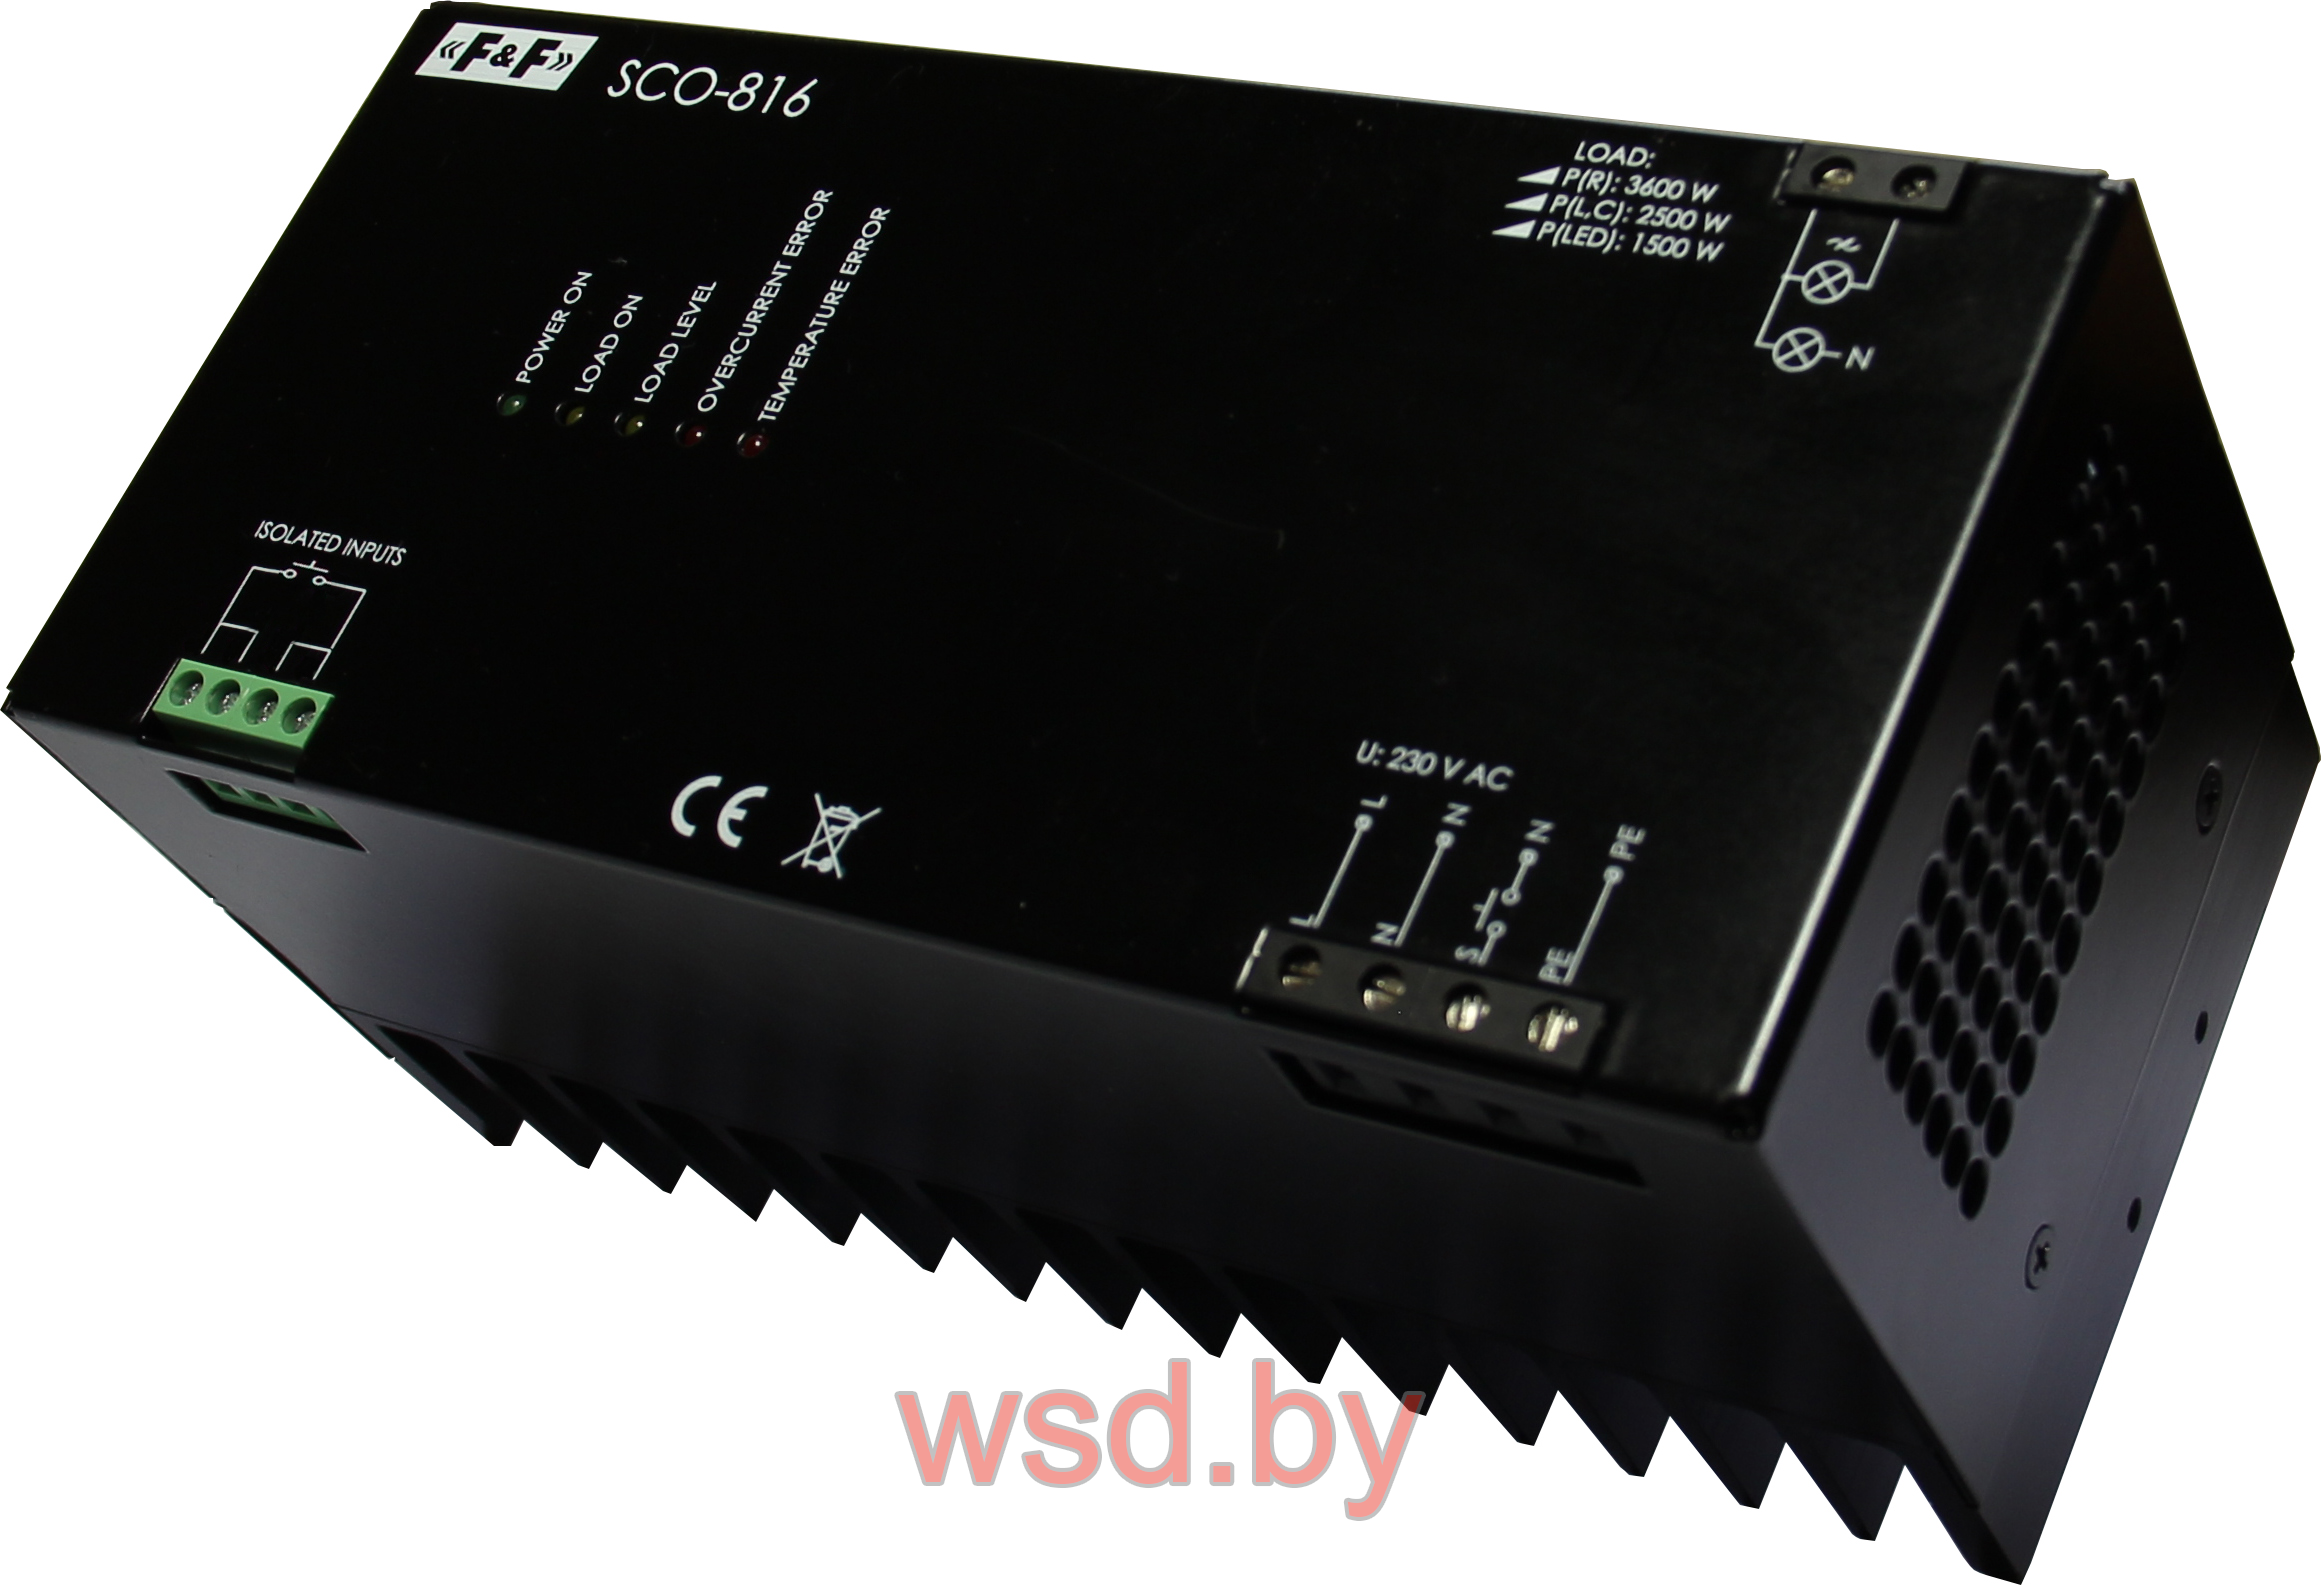 SCO-816 Для всех типов ламп, мощность нагрузки до 3,5кВт, напряжение  управления  8-230В AC/DC,  1 модуль, монтаж на DIN-рейке 230В AC 15A IP20